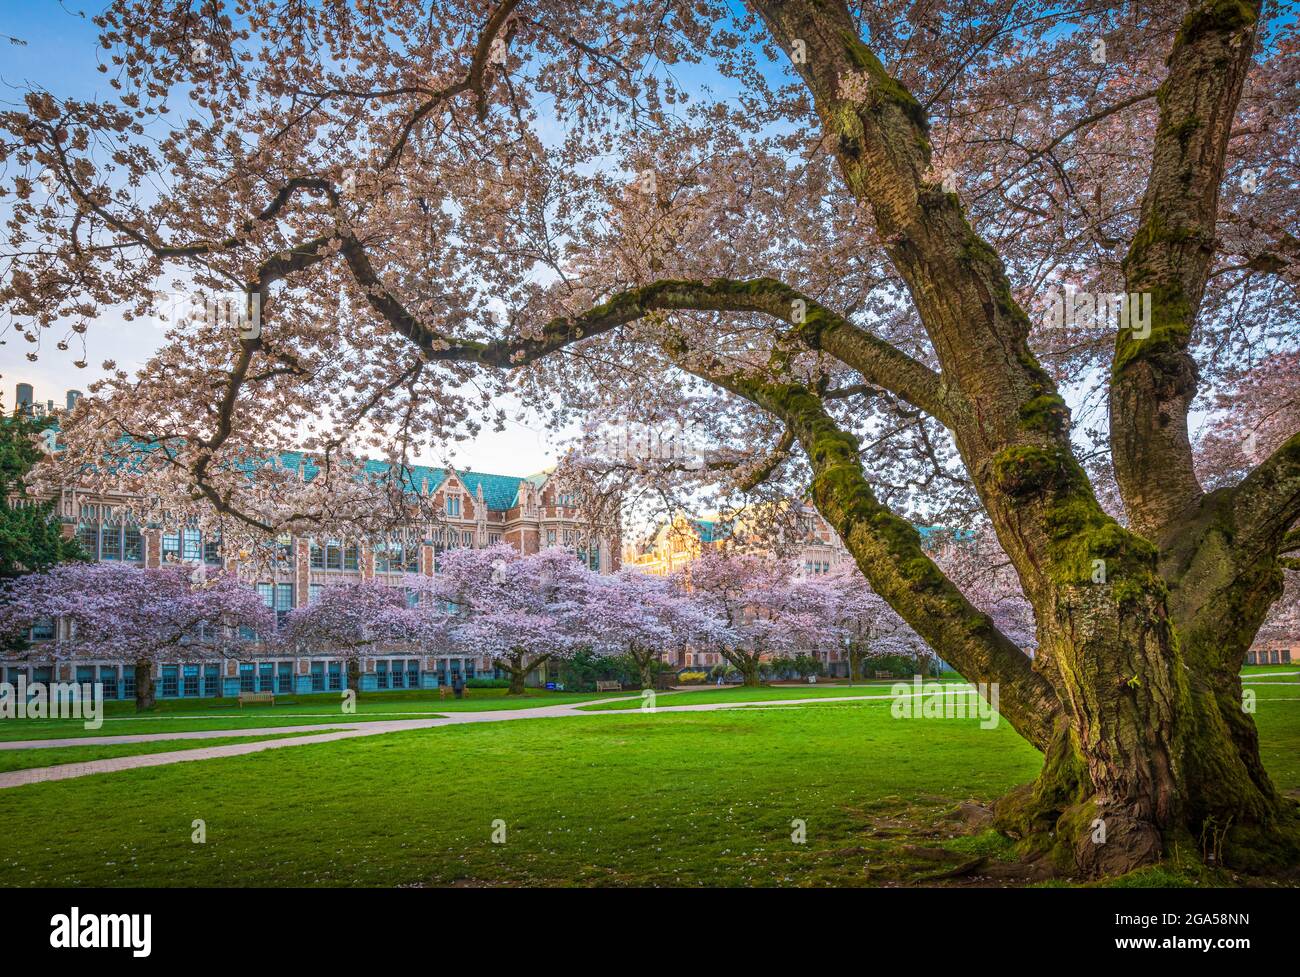 La Universidad de Washington (comúnmente conocida como Washington o UDub) es una universidad pública de investigación en Seattle, Washington, Estados Unidos Foto de stock